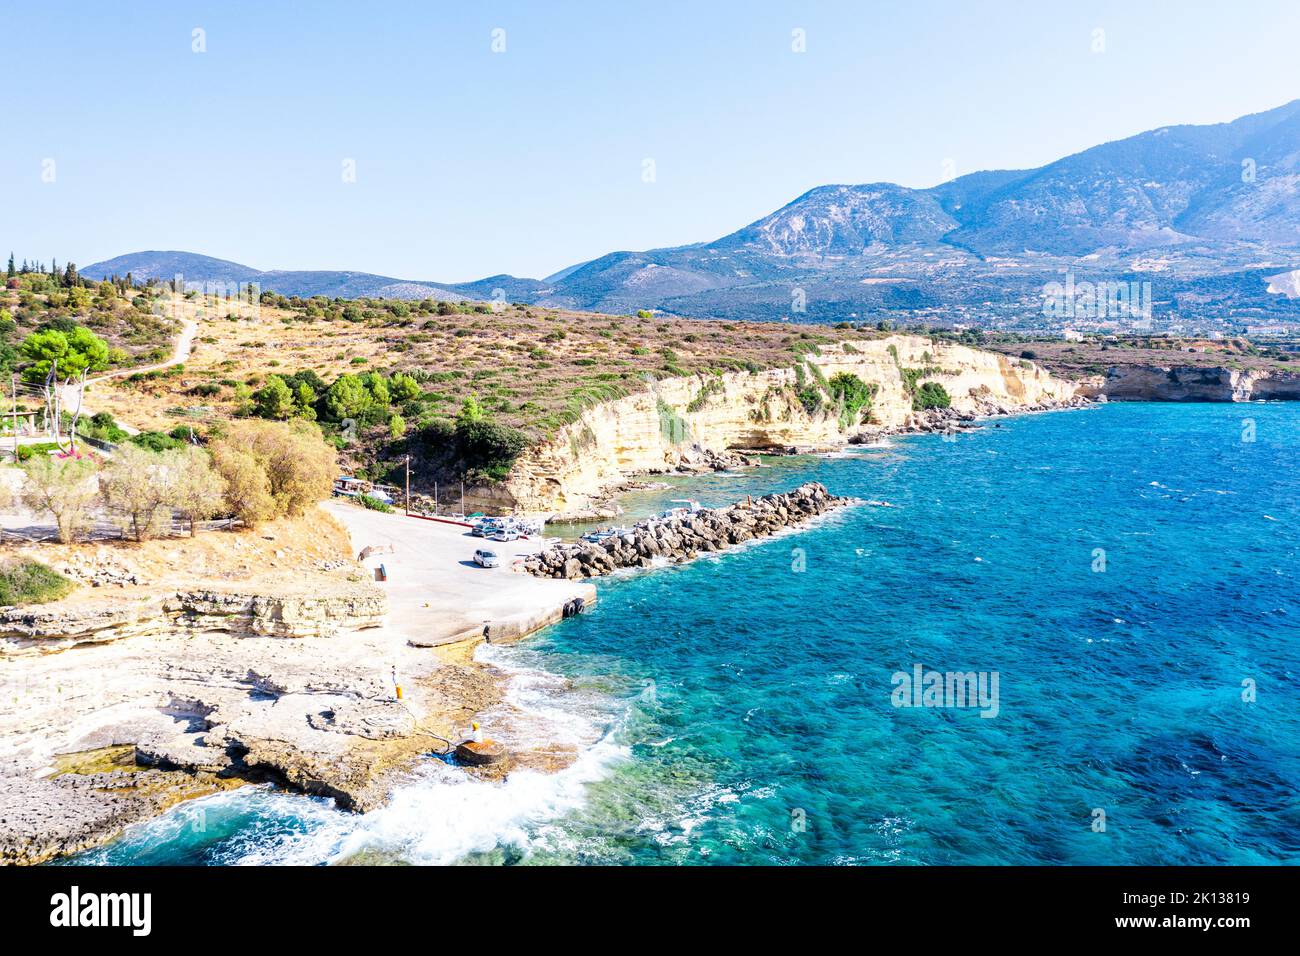 Onde del mare turchese che si schiantano sulle rocce nel piccolo porto di Pessada, vista aerea, Cefalonia, Isole IONIE, Isole greche, Grecia, Europa Foto Stock